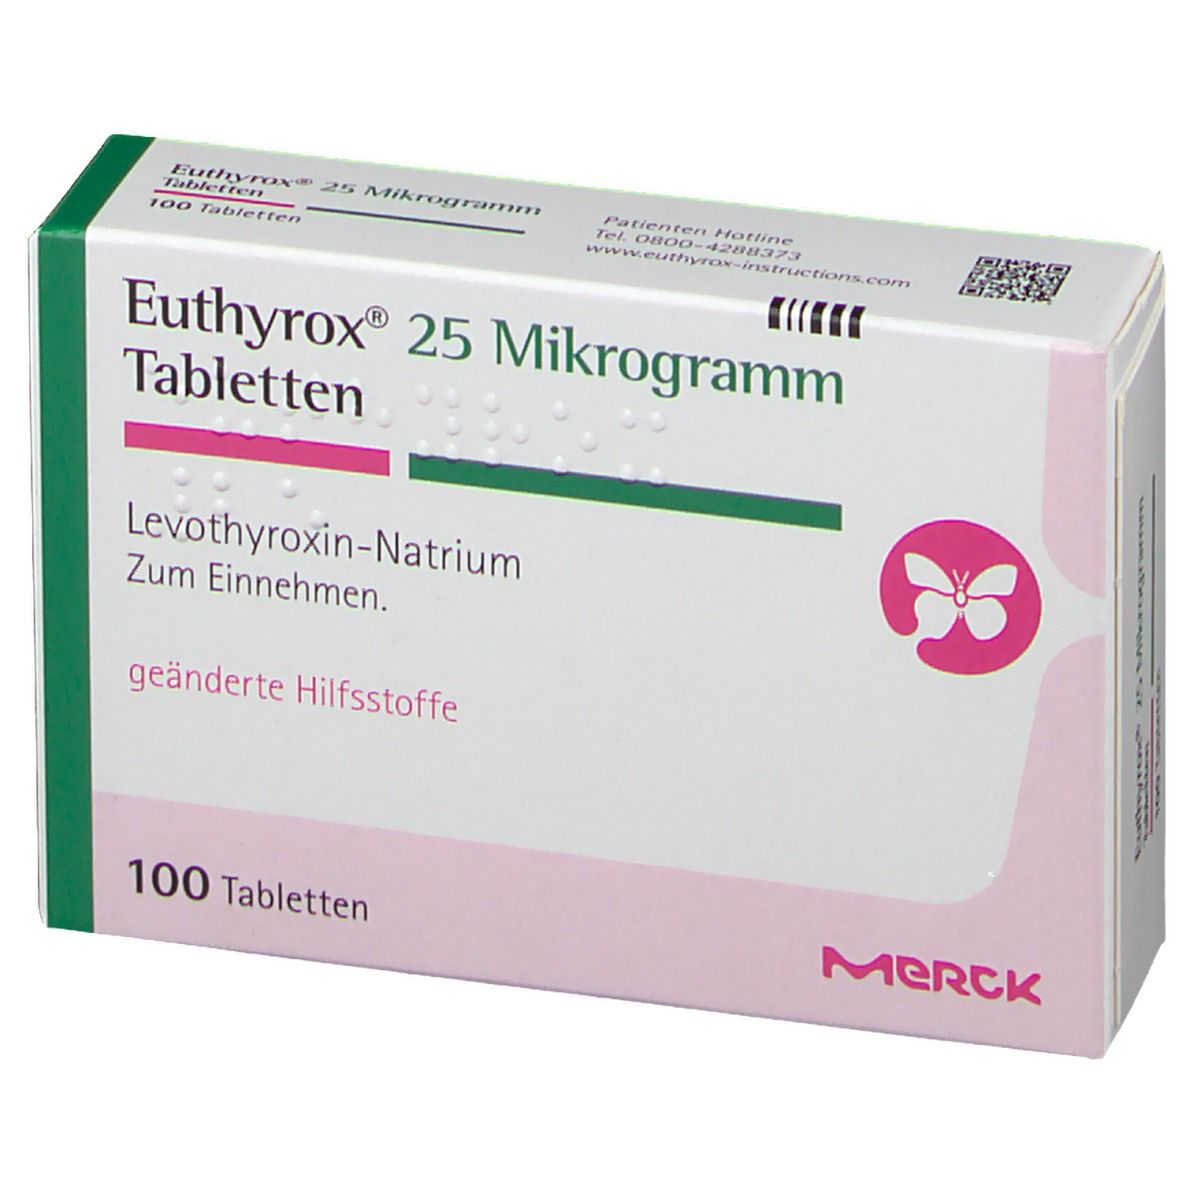 Euthyrox® 25 µg